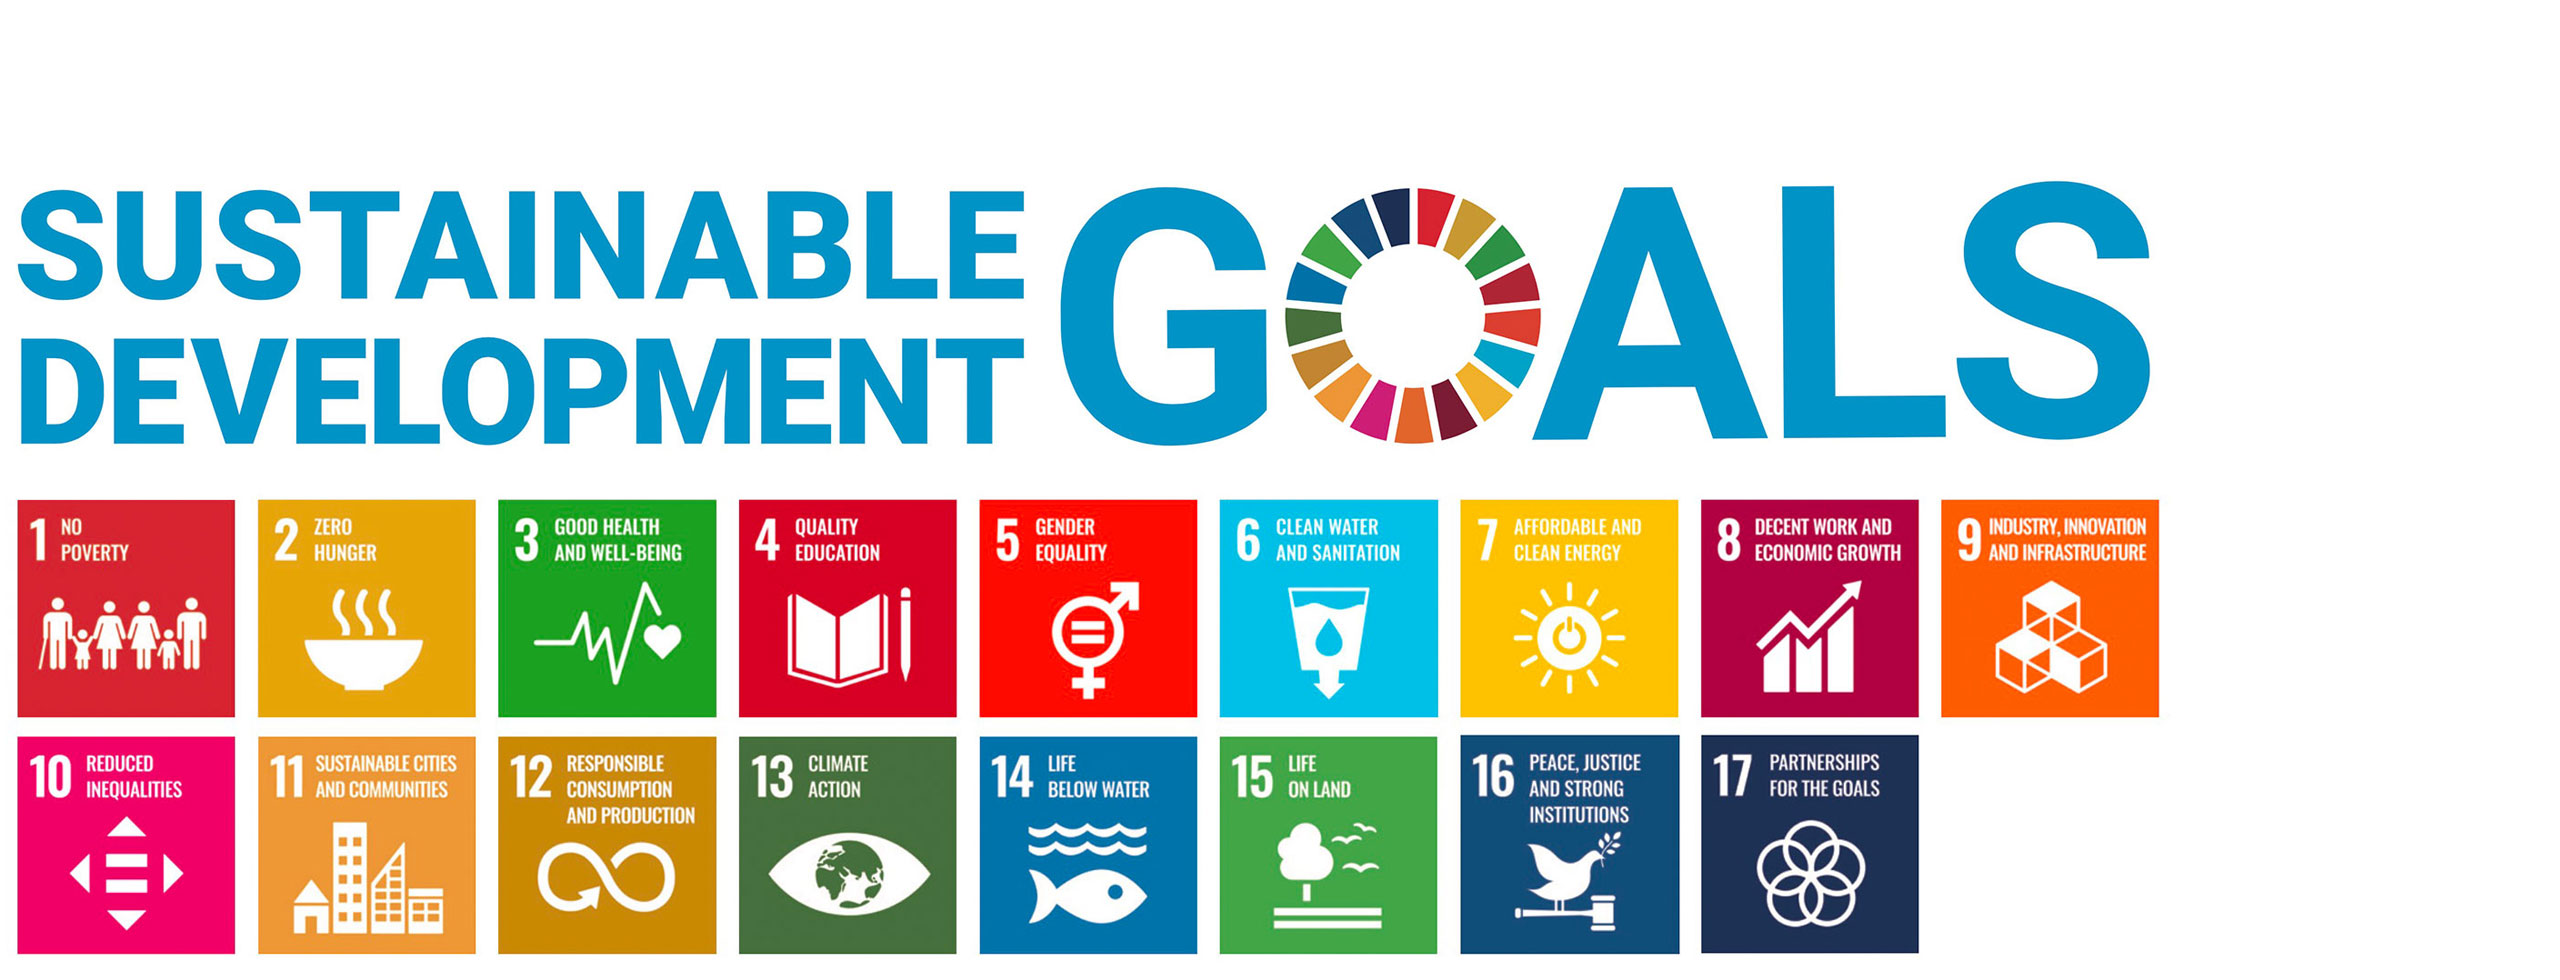 幅広い事業活動を通じて、SDGsの目標達成と持続可能な社会の実現に努めてまいります。